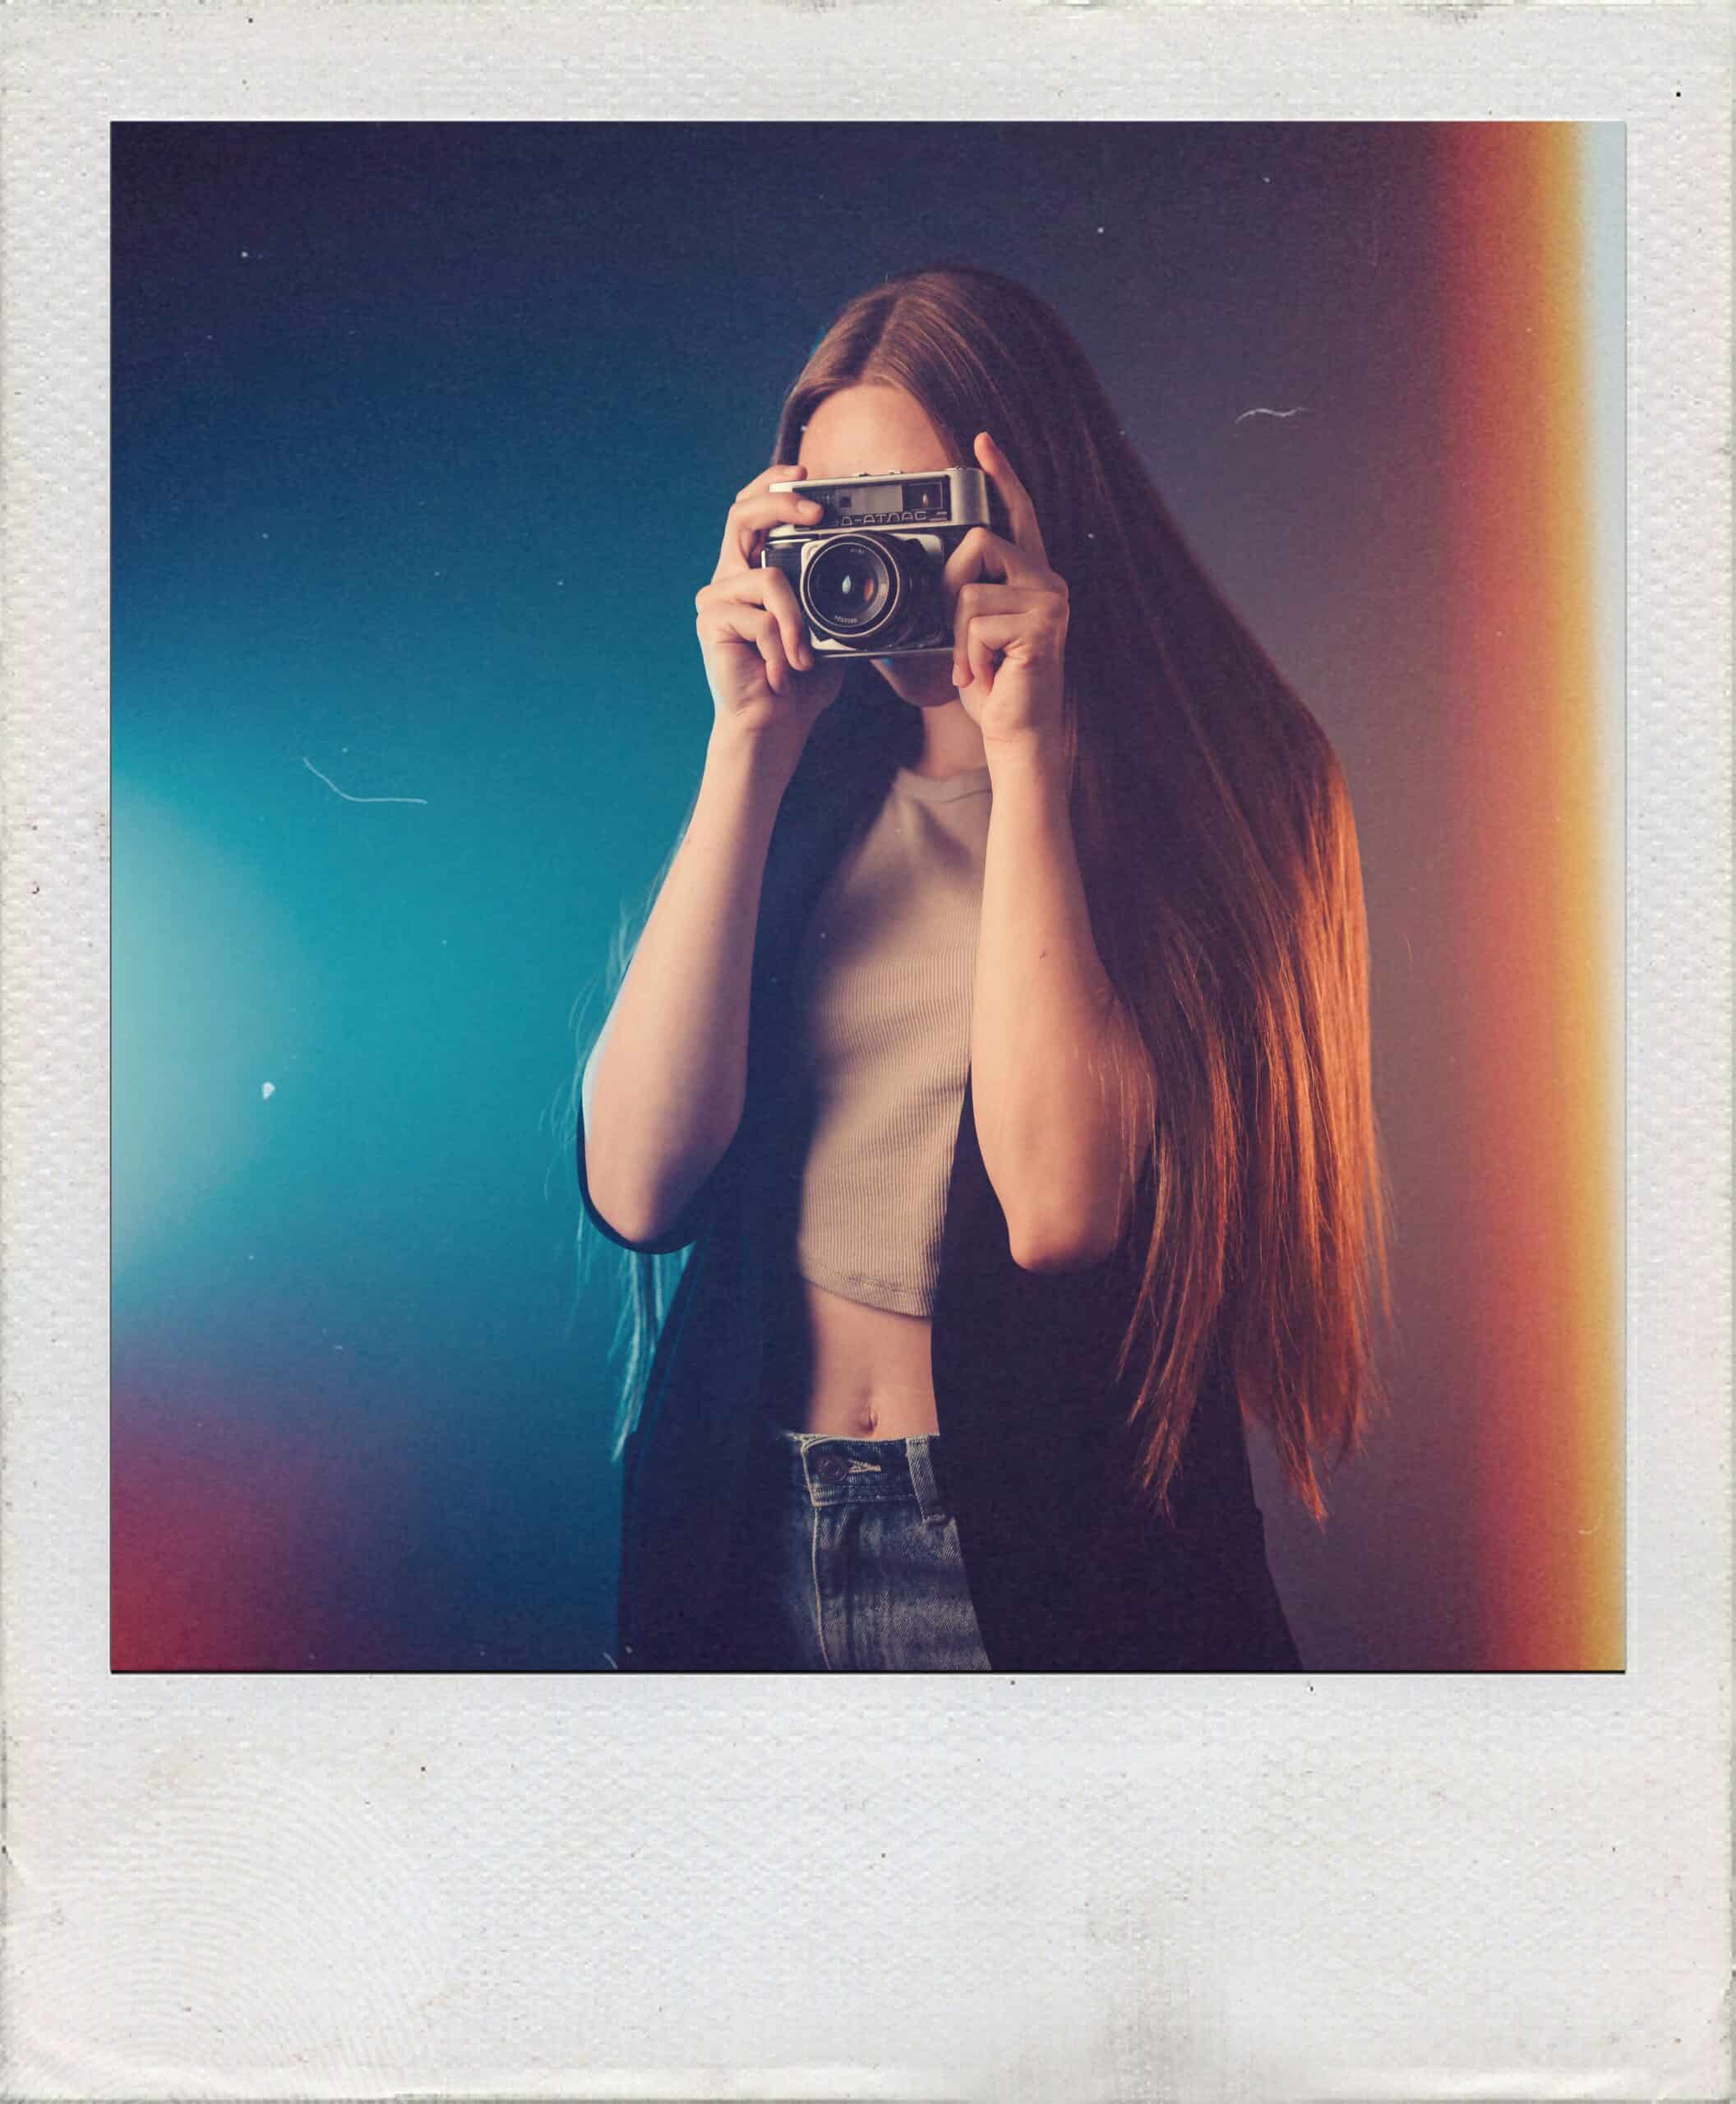 Polaroid-Style Photos